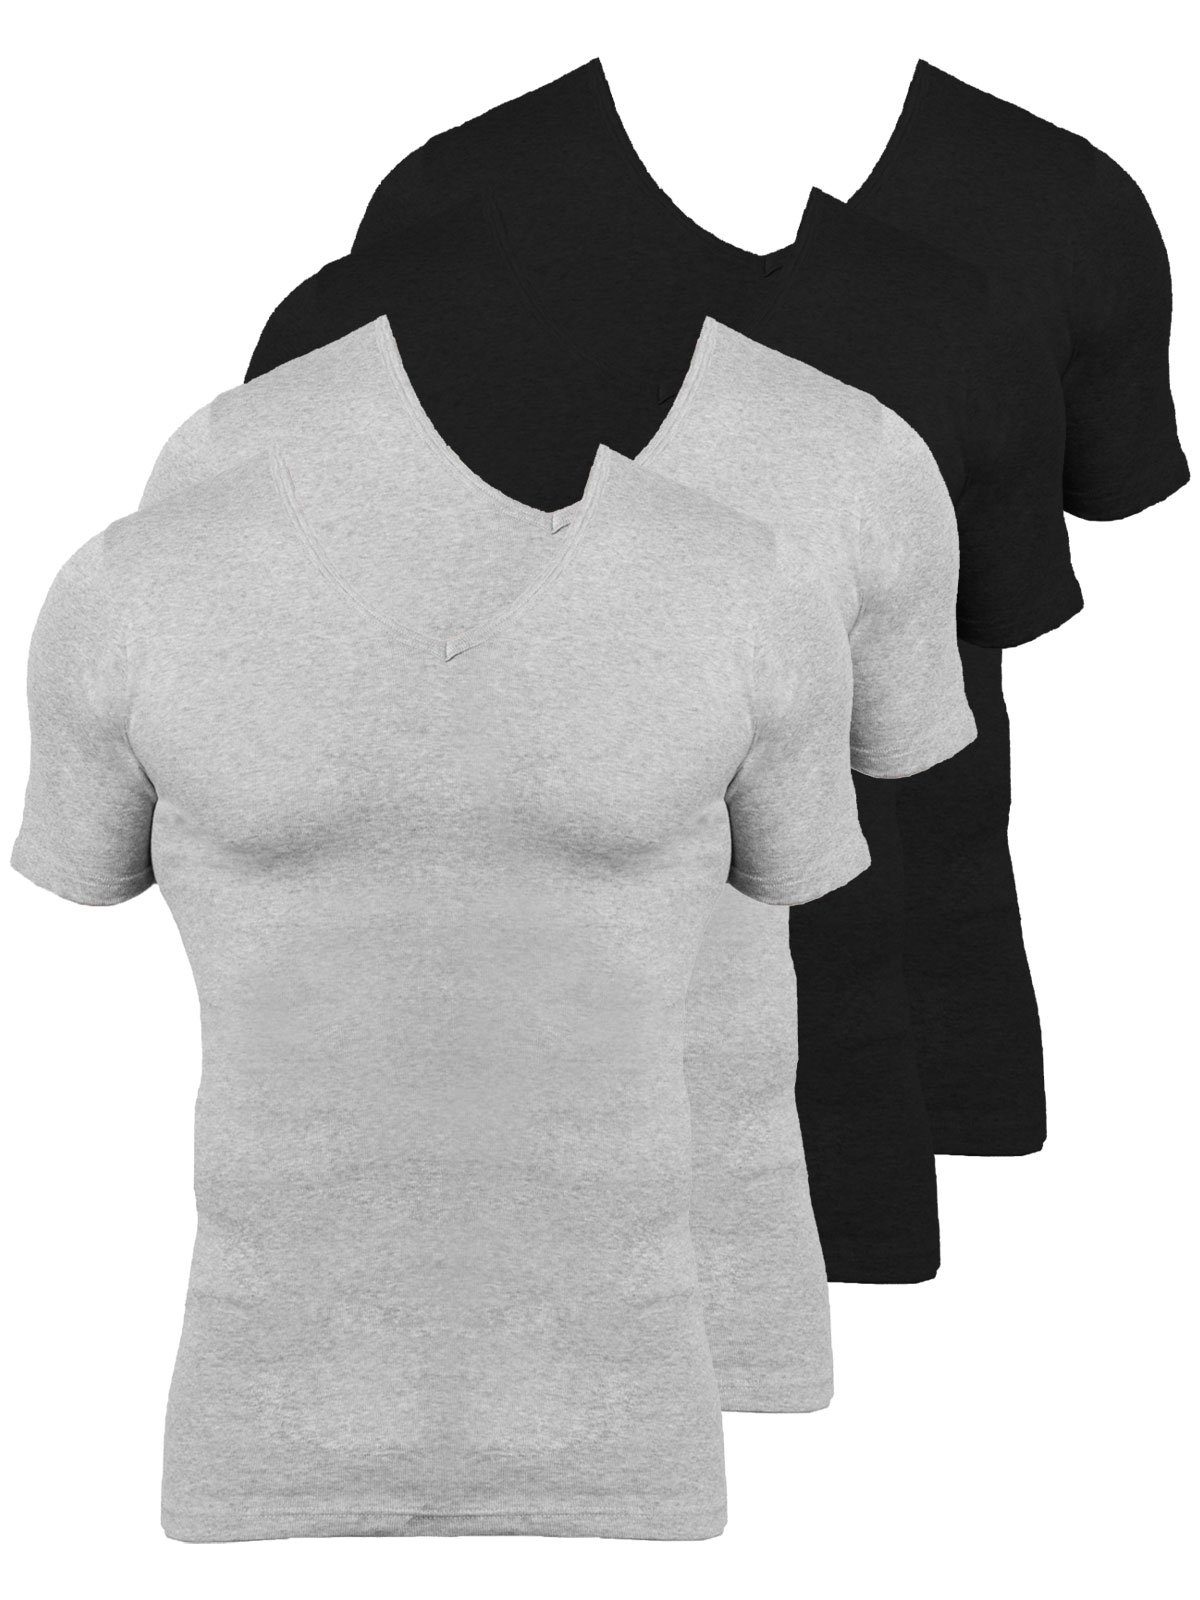 KUMPF Unterziehshirt 4er Sparpack Herren T-Shirt Bio Cotton (Spar-Set, 4-St) hohe Markenqualität schwarz steingrau-melange | Unterhemden